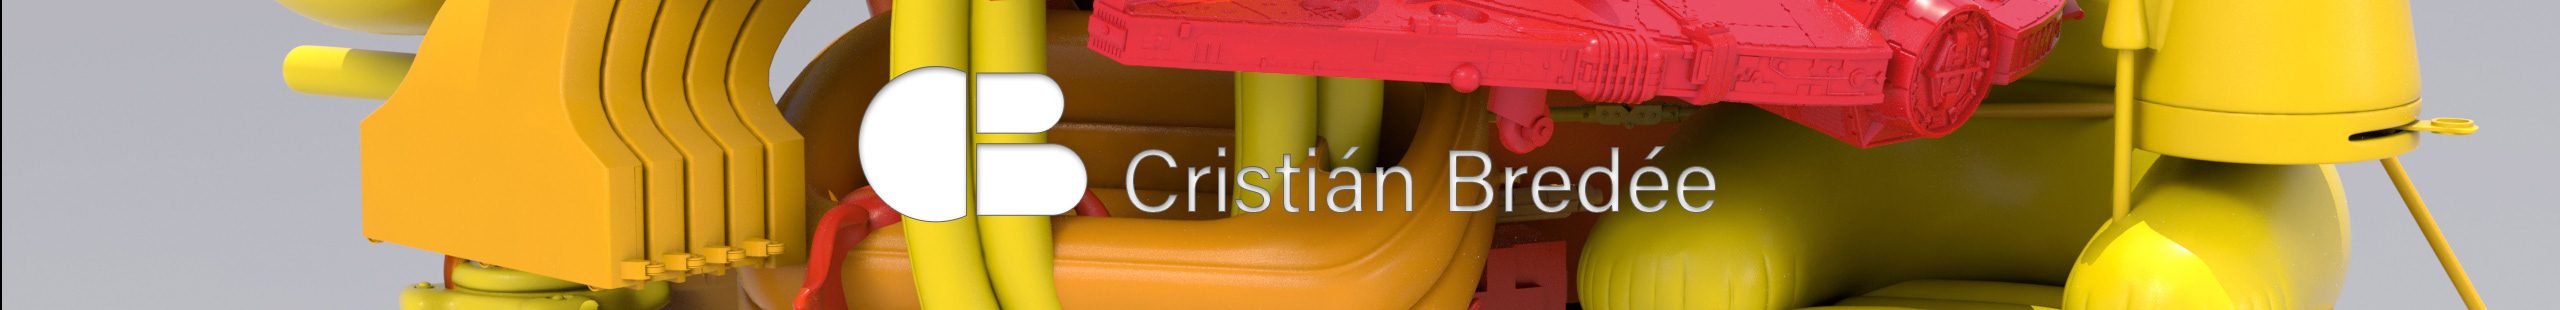 Cristian Bredee's profile banner